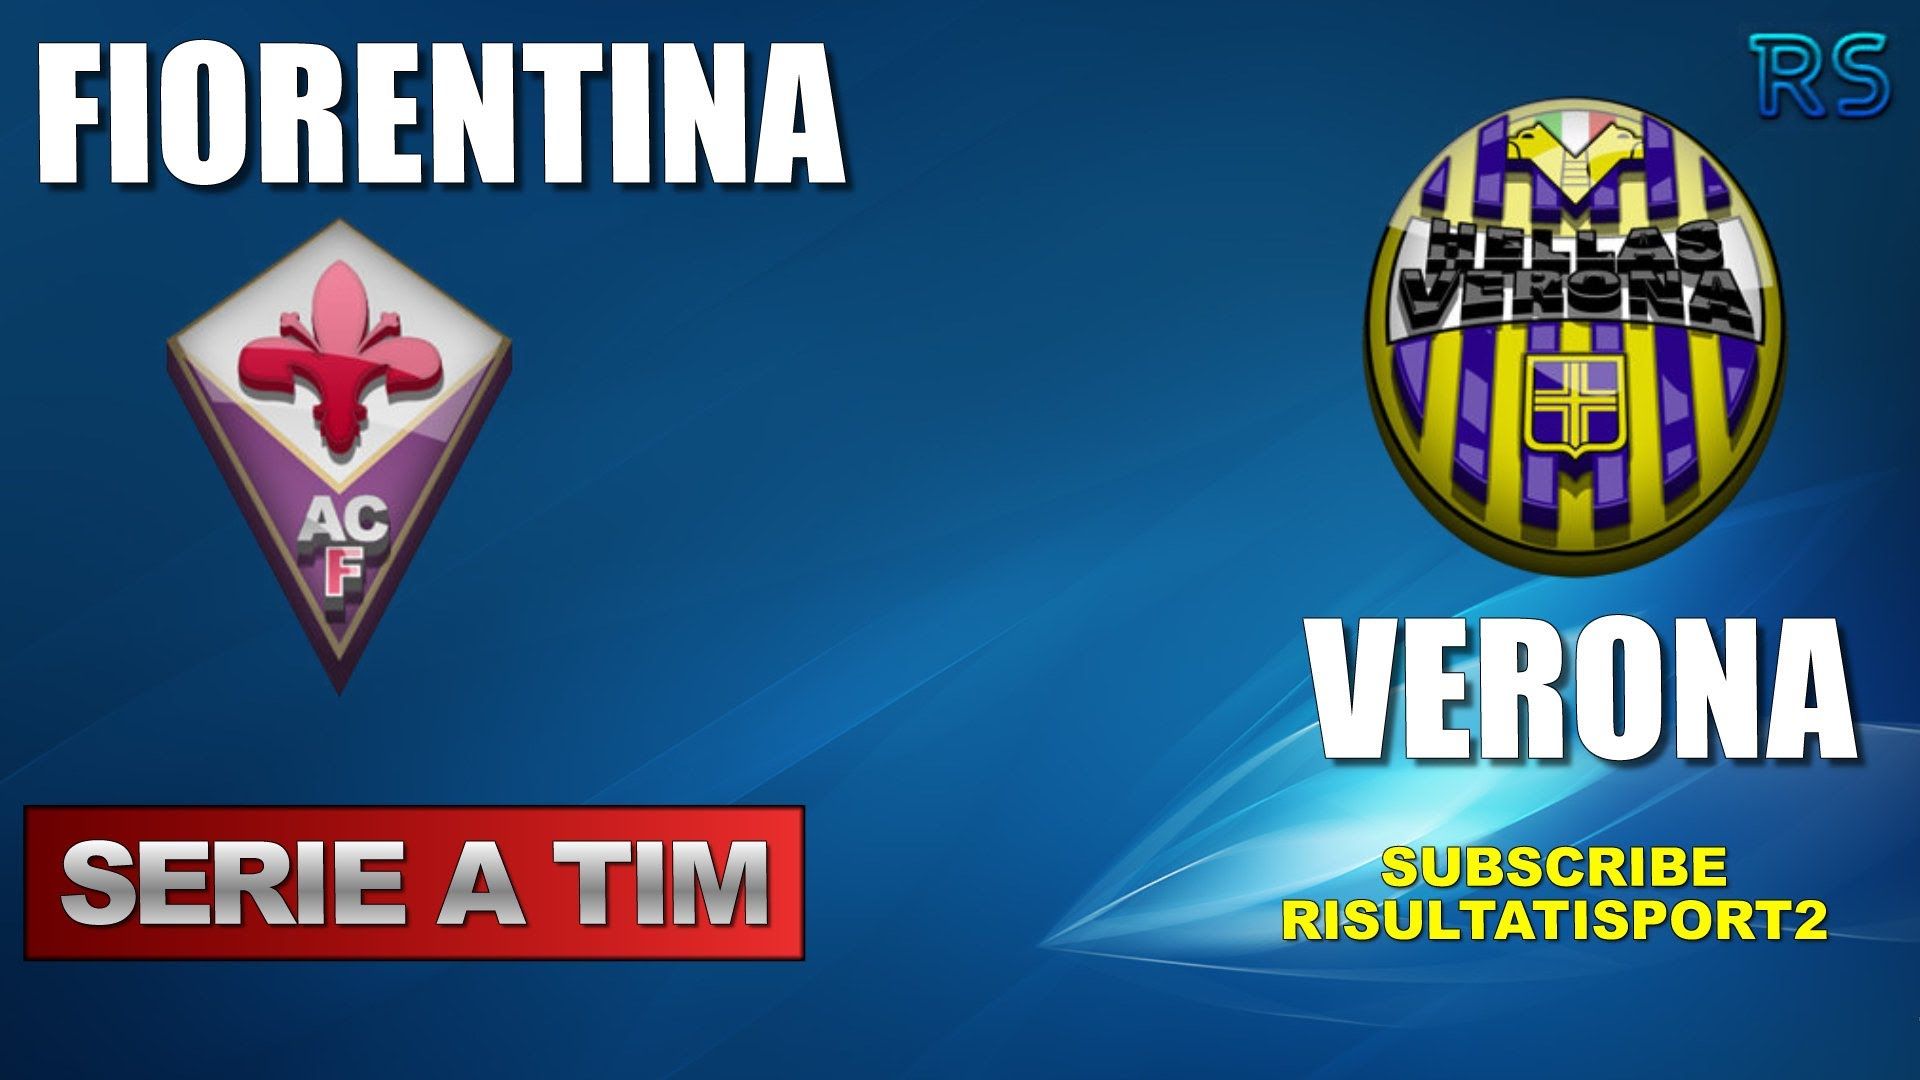 Fiorentina - Verona